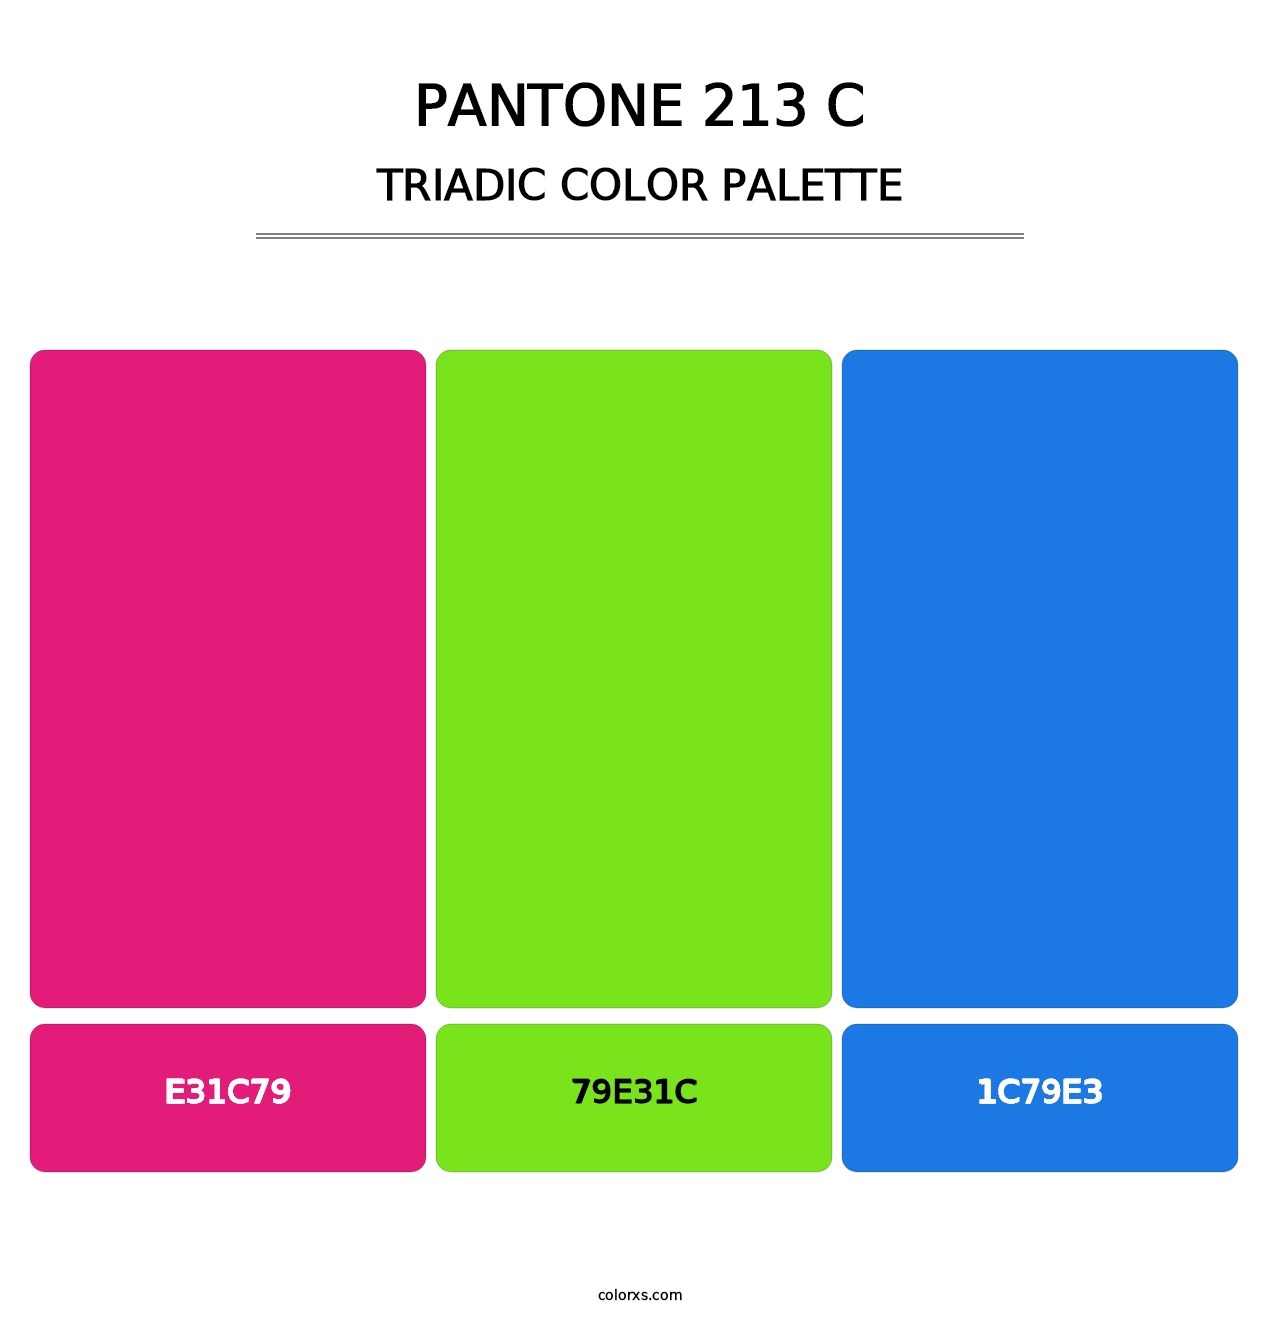 PANTONE 213 C - Triadic Color Palette